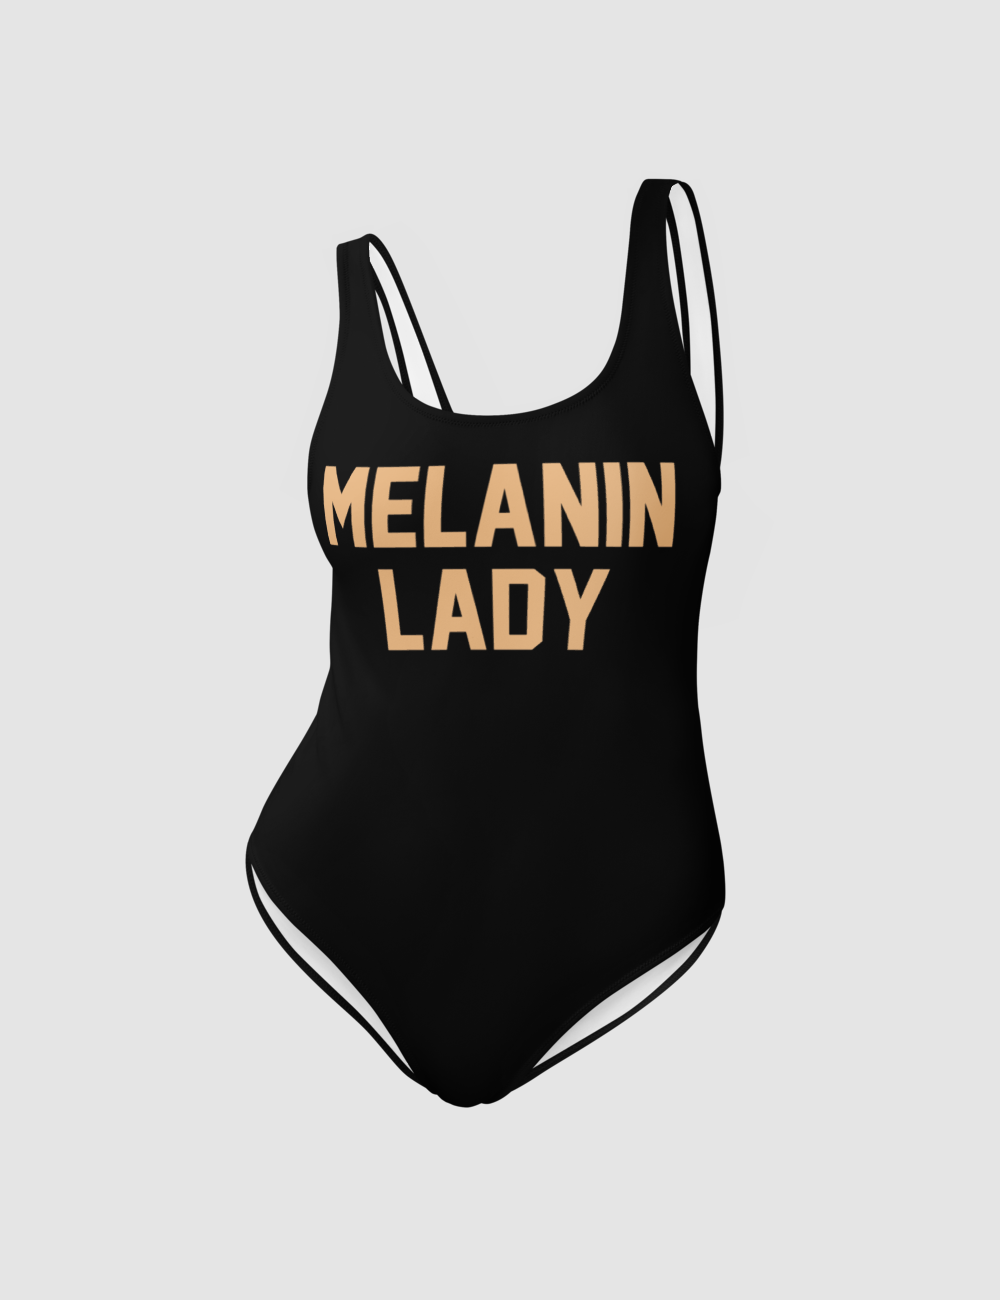 Melanin Lady | Women's One-Piece Swimsuit OniTakai